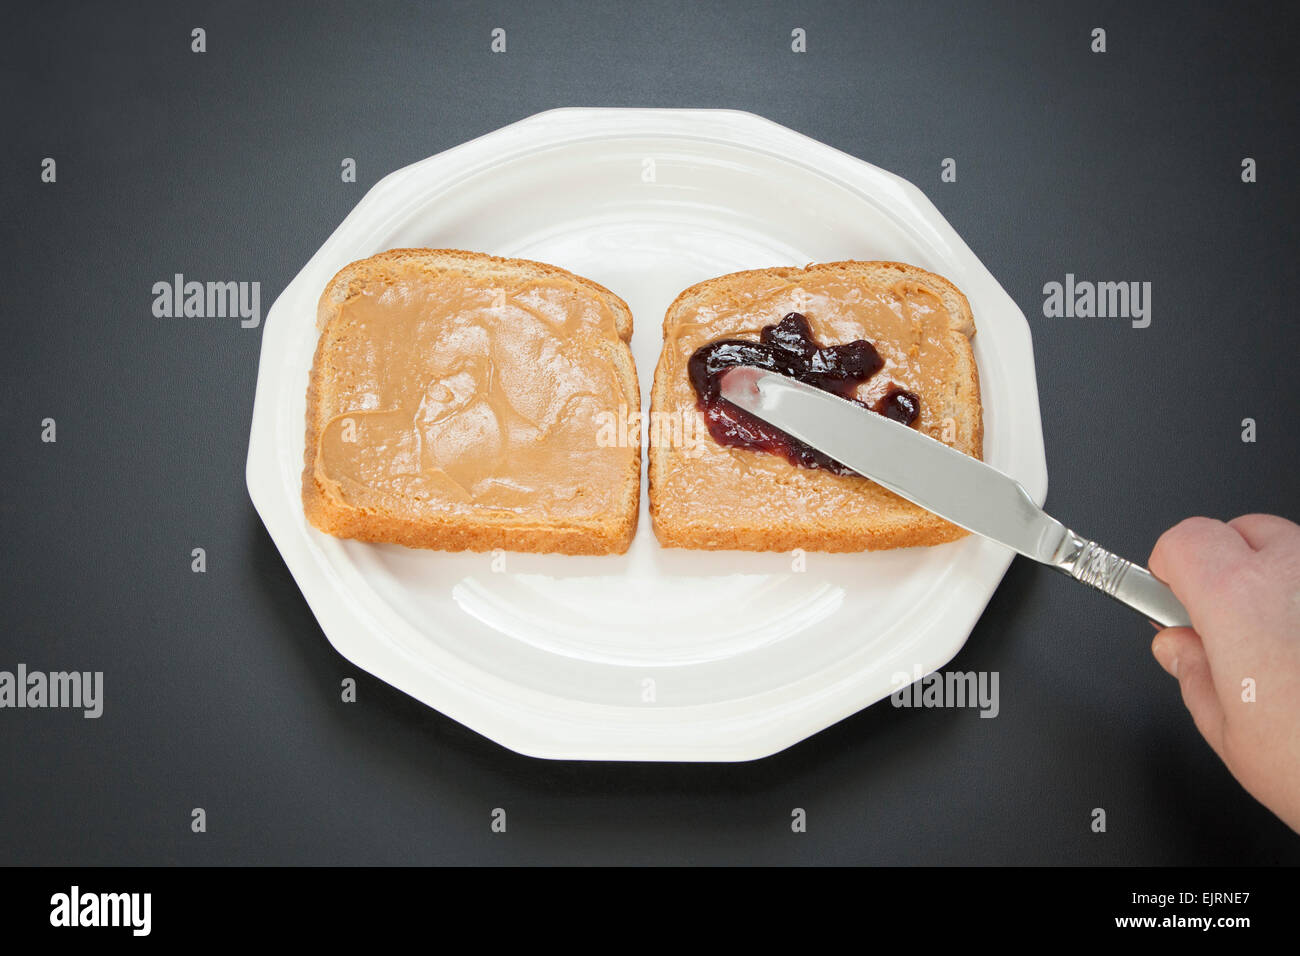 Zwei Scheiben Weißbrot stehen nebeneinander auf einem weißen Teller; Erdnussbutter und Marmelade sind mit einem Messer auf dem Brot verteilen. Stockfoto